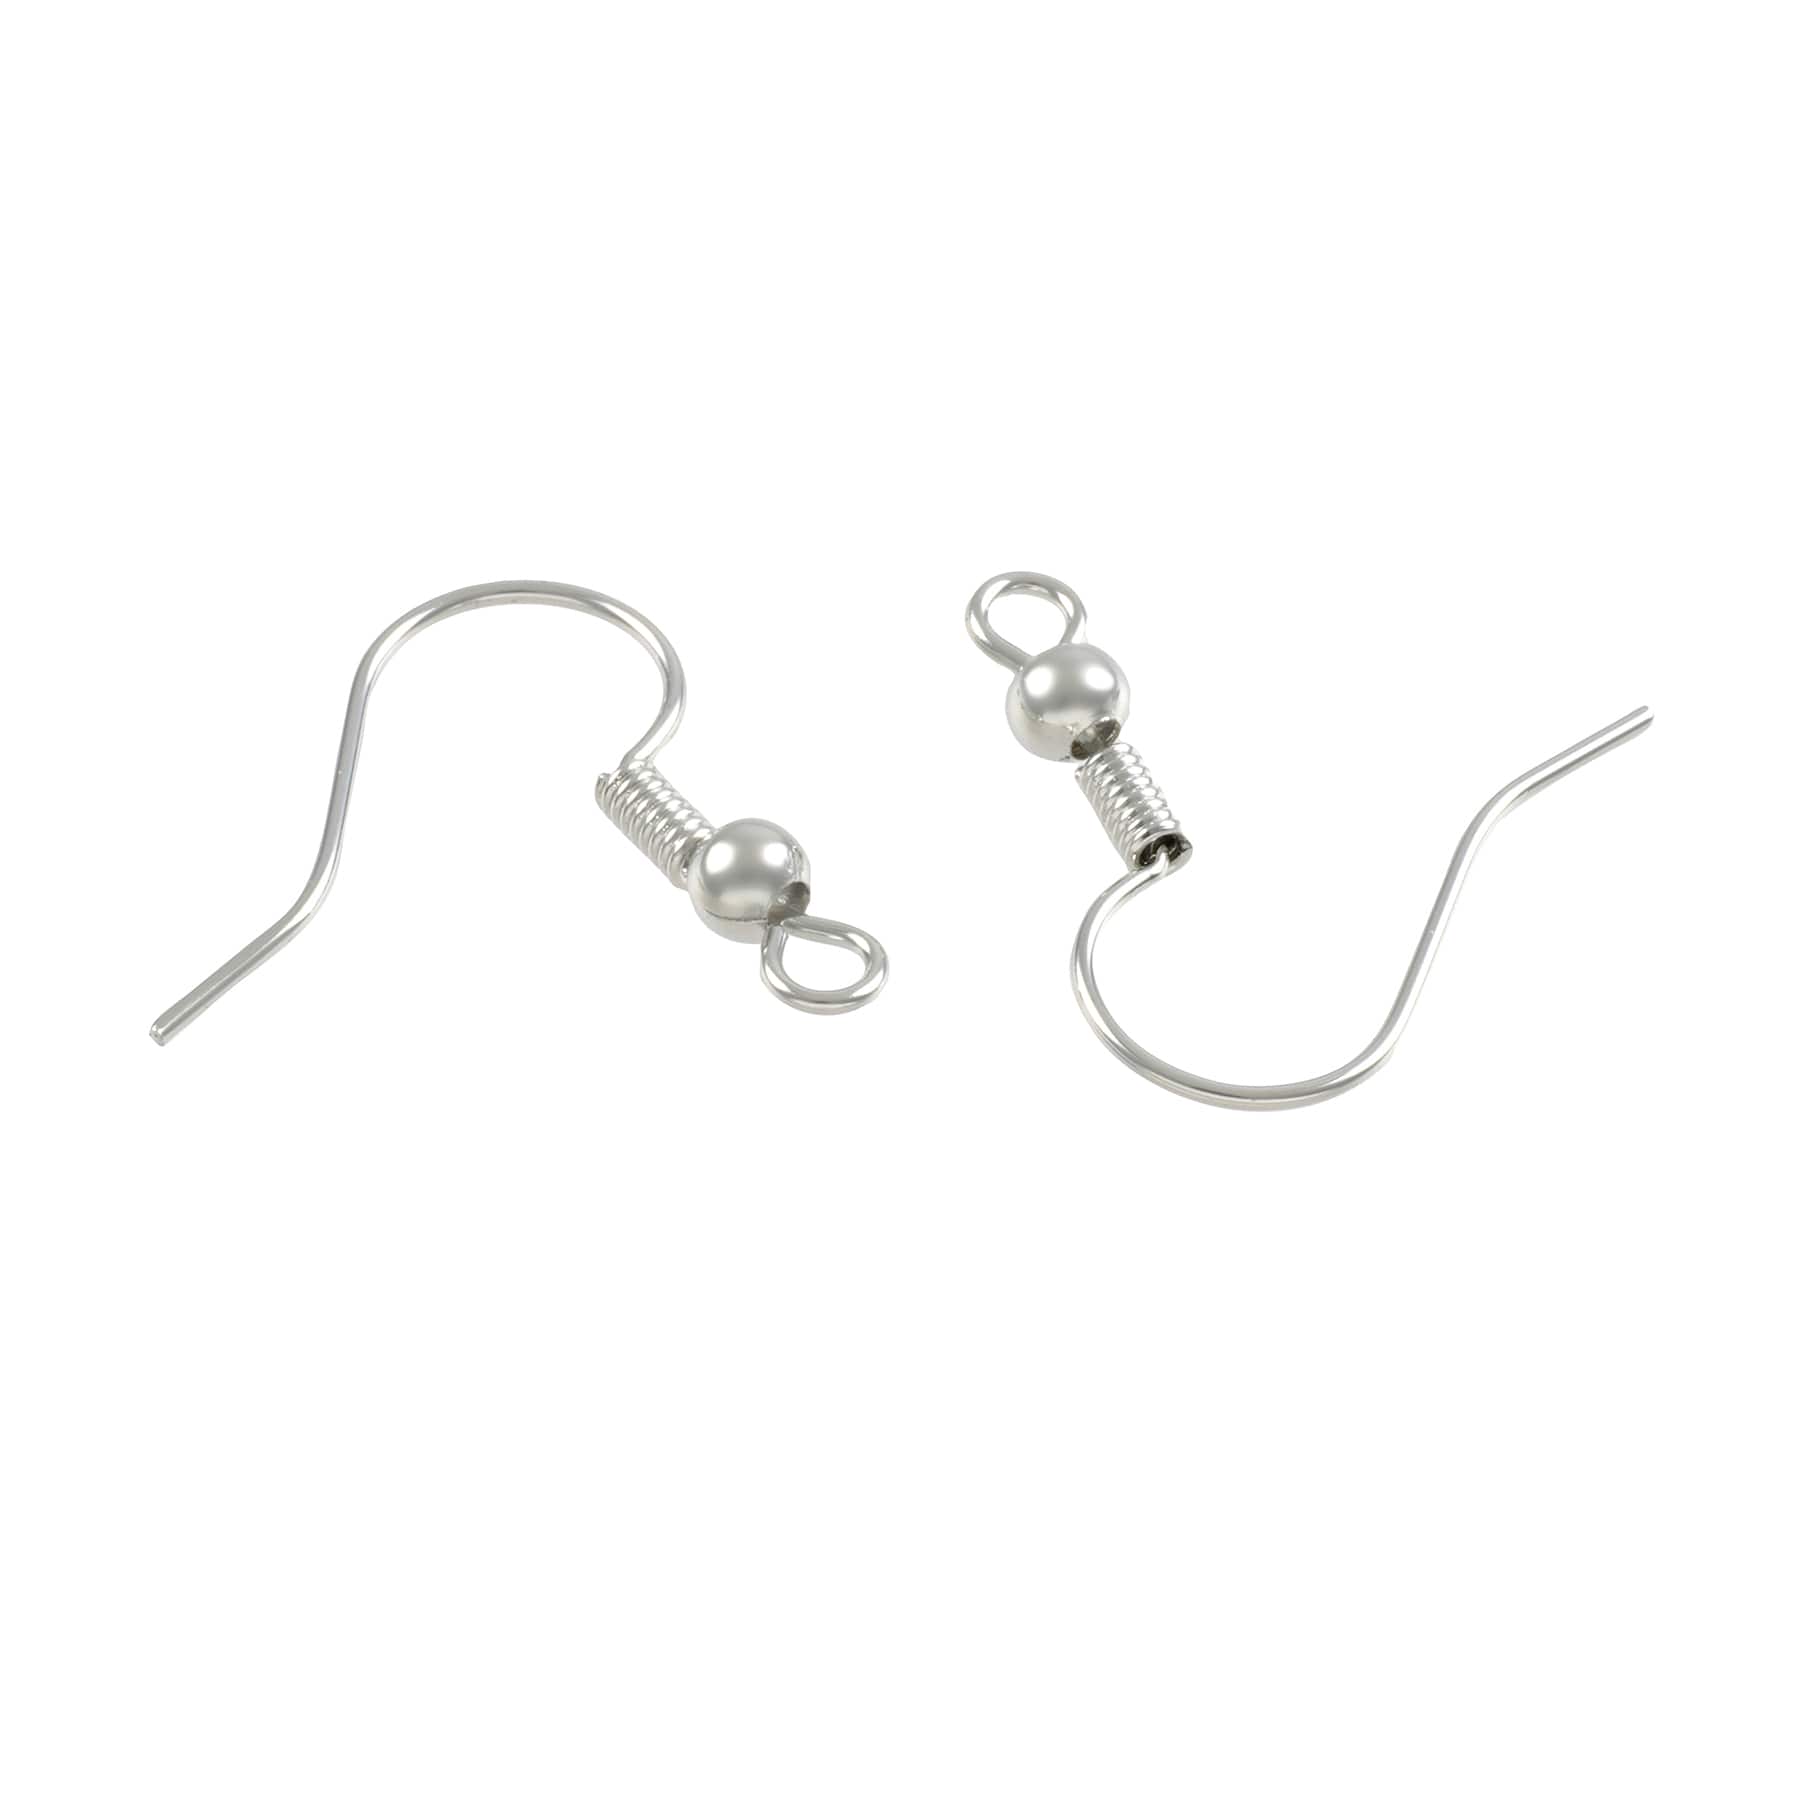 Buy in Bulk - 9 Pack: Rhodium Fish Hook Earwires by Bead Landing™ Premium  Metals